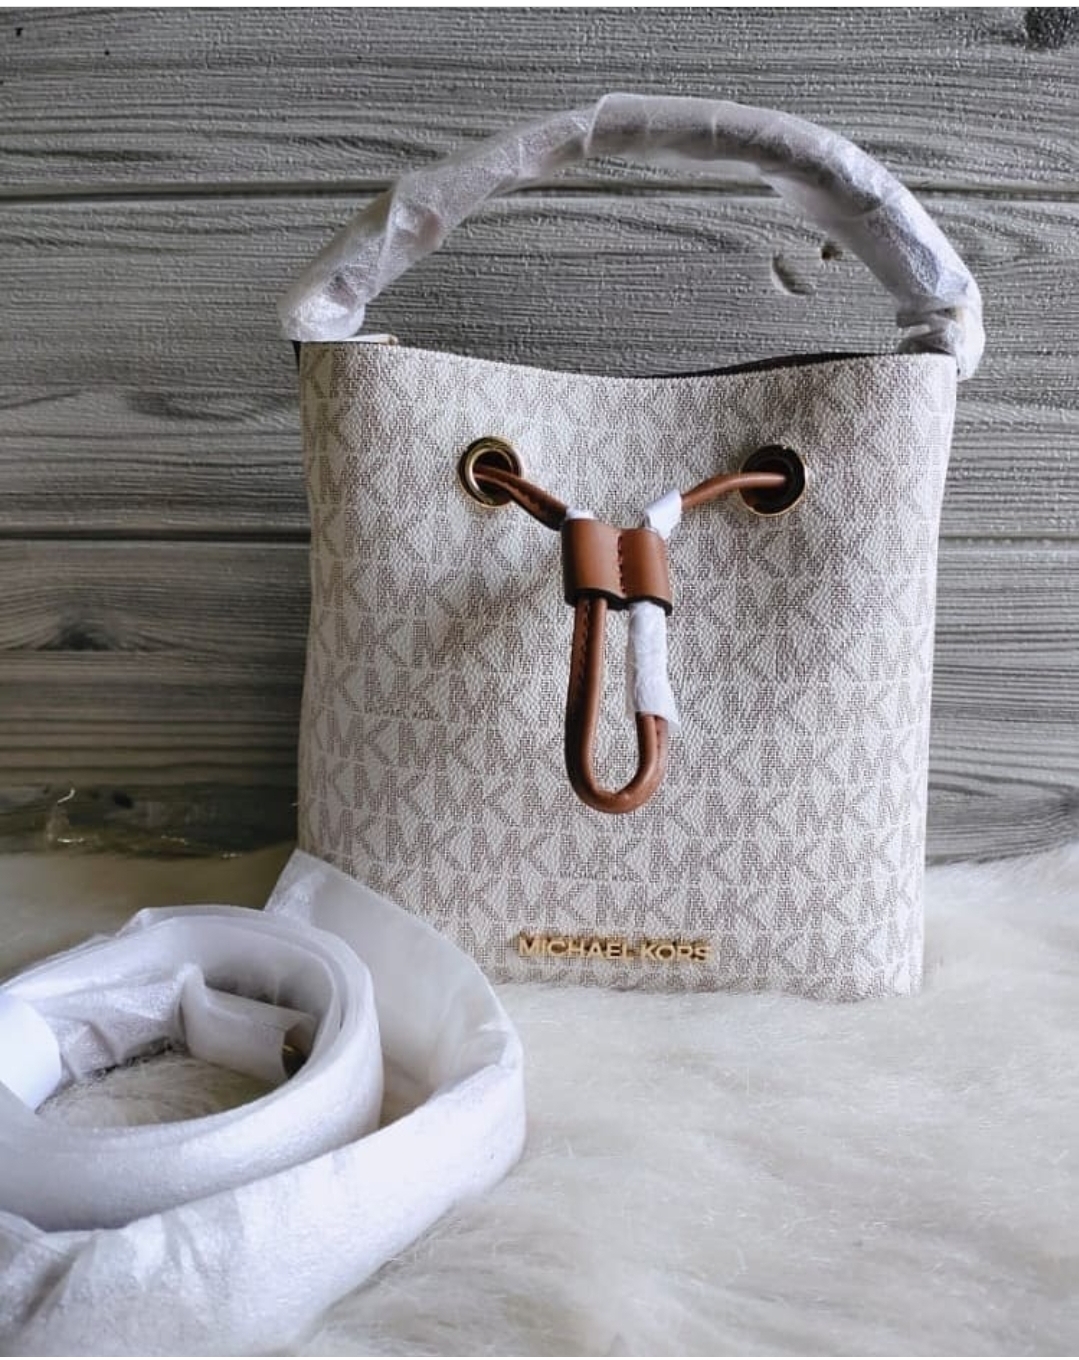 Michael Kors Suri Small Bucket Bag in Vanilla PVC, Vanilla Pvc, NS